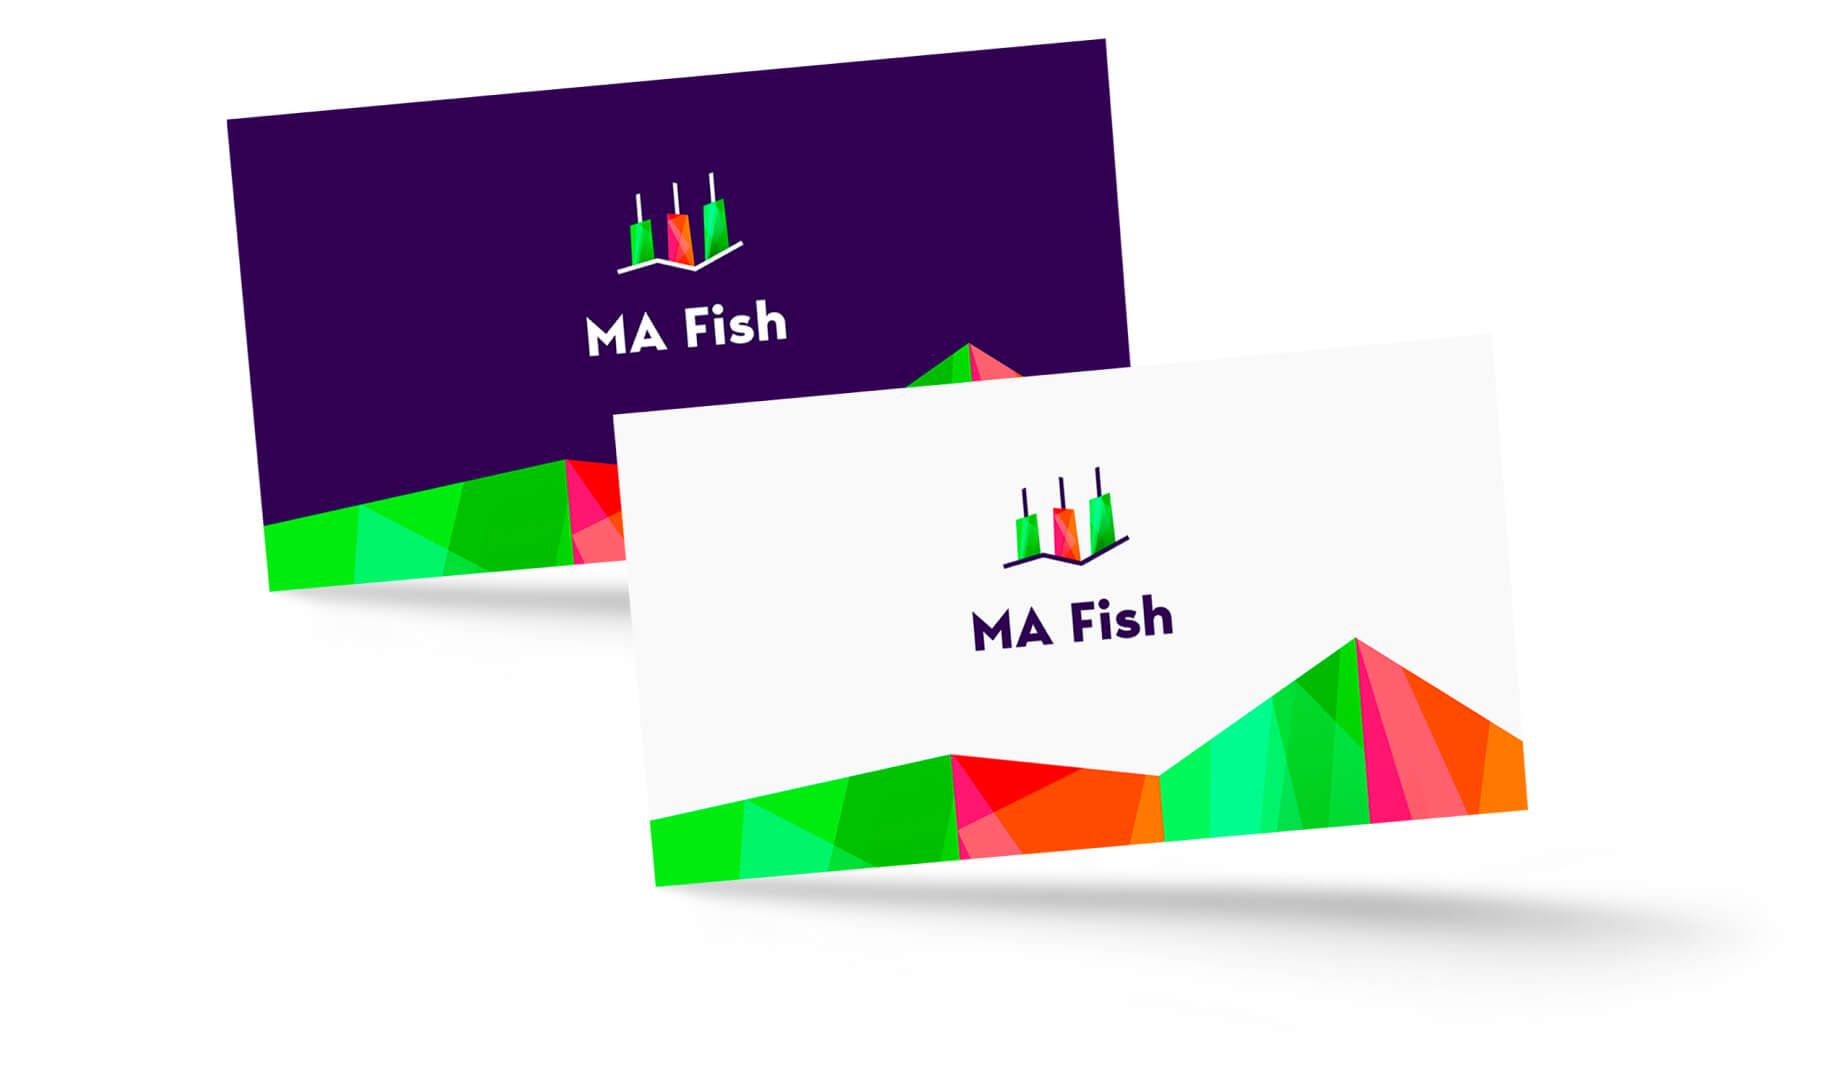 Дизайн логотипа системы управления капиталом MA Fish